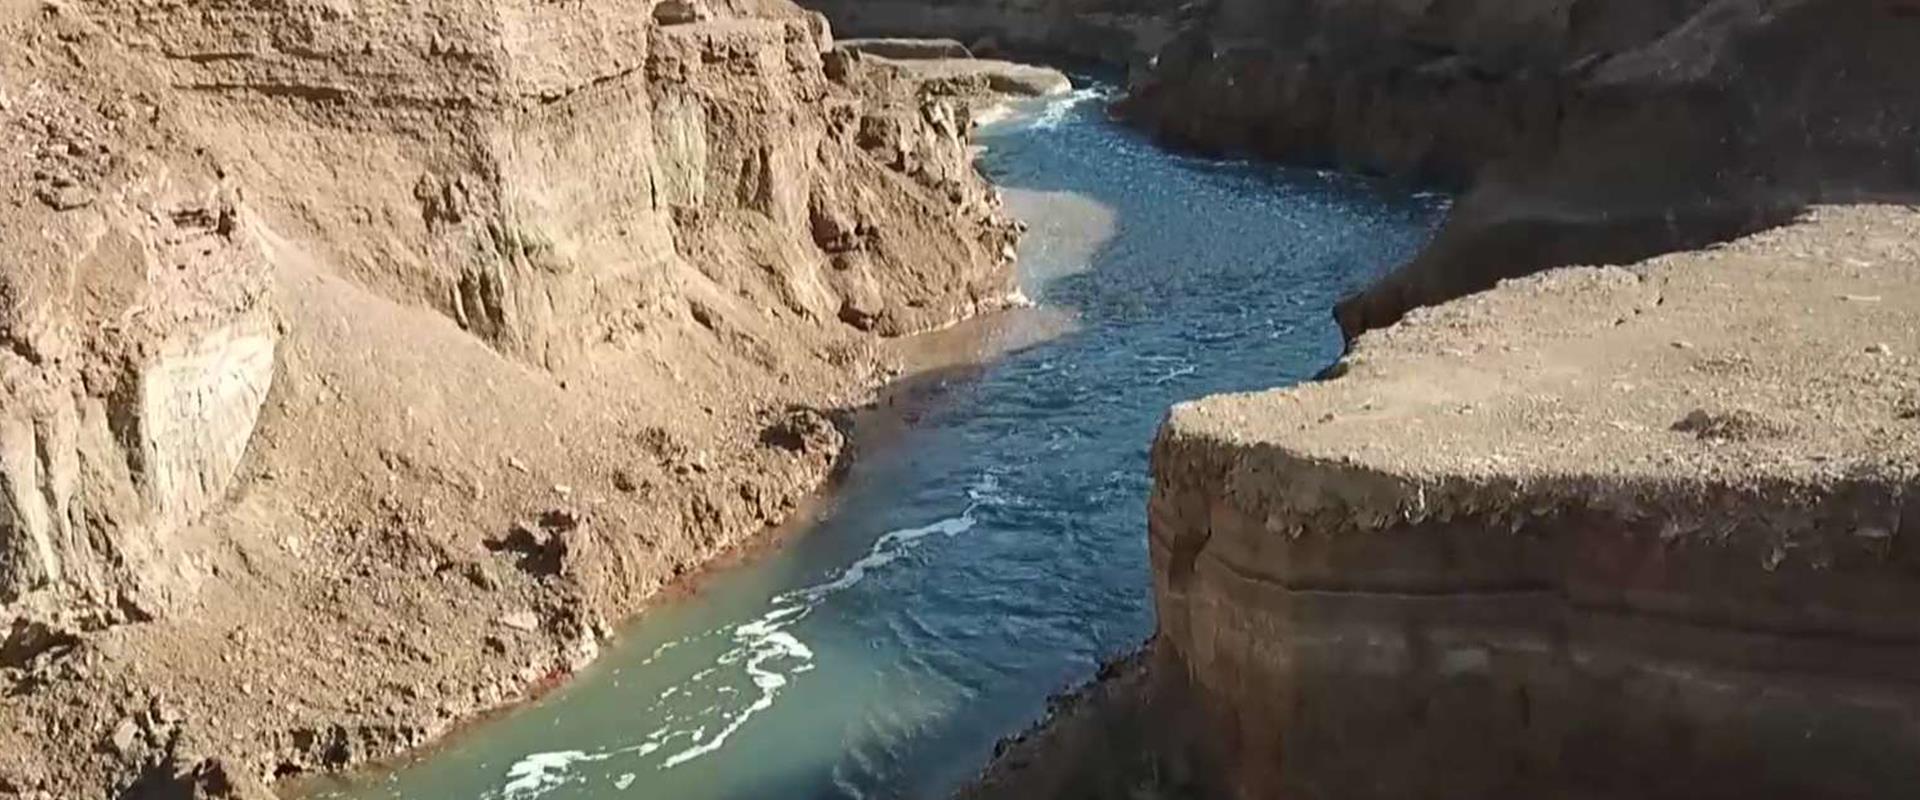 הנהר הנסתר